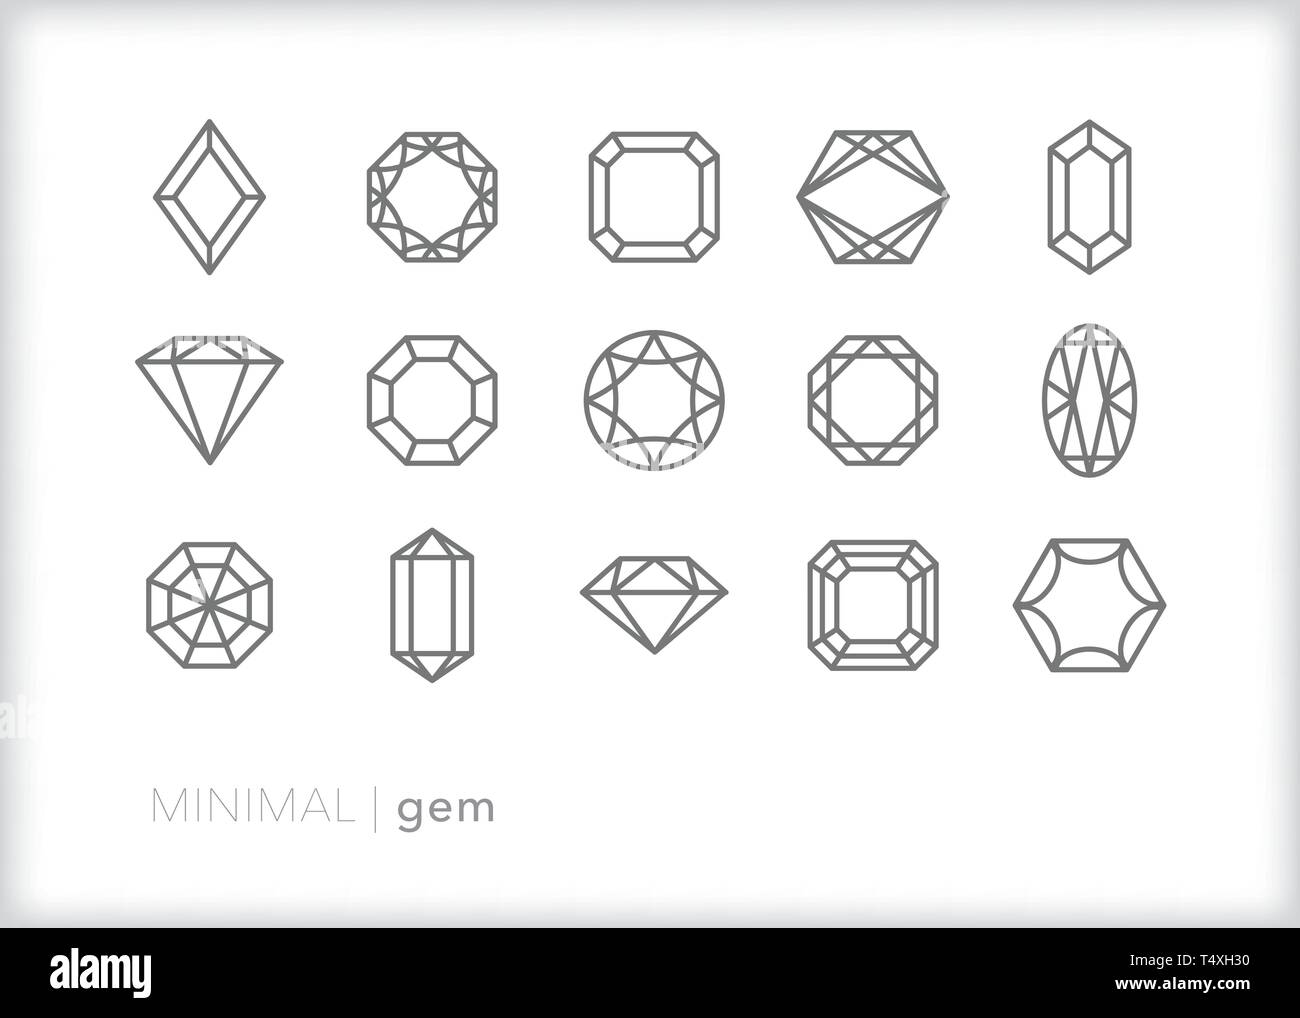 Set di 15 gem e linea gioiello le icone dei vari tagli di diamanti e pietre preziose per gioielleria Illustrazione Vettoriale